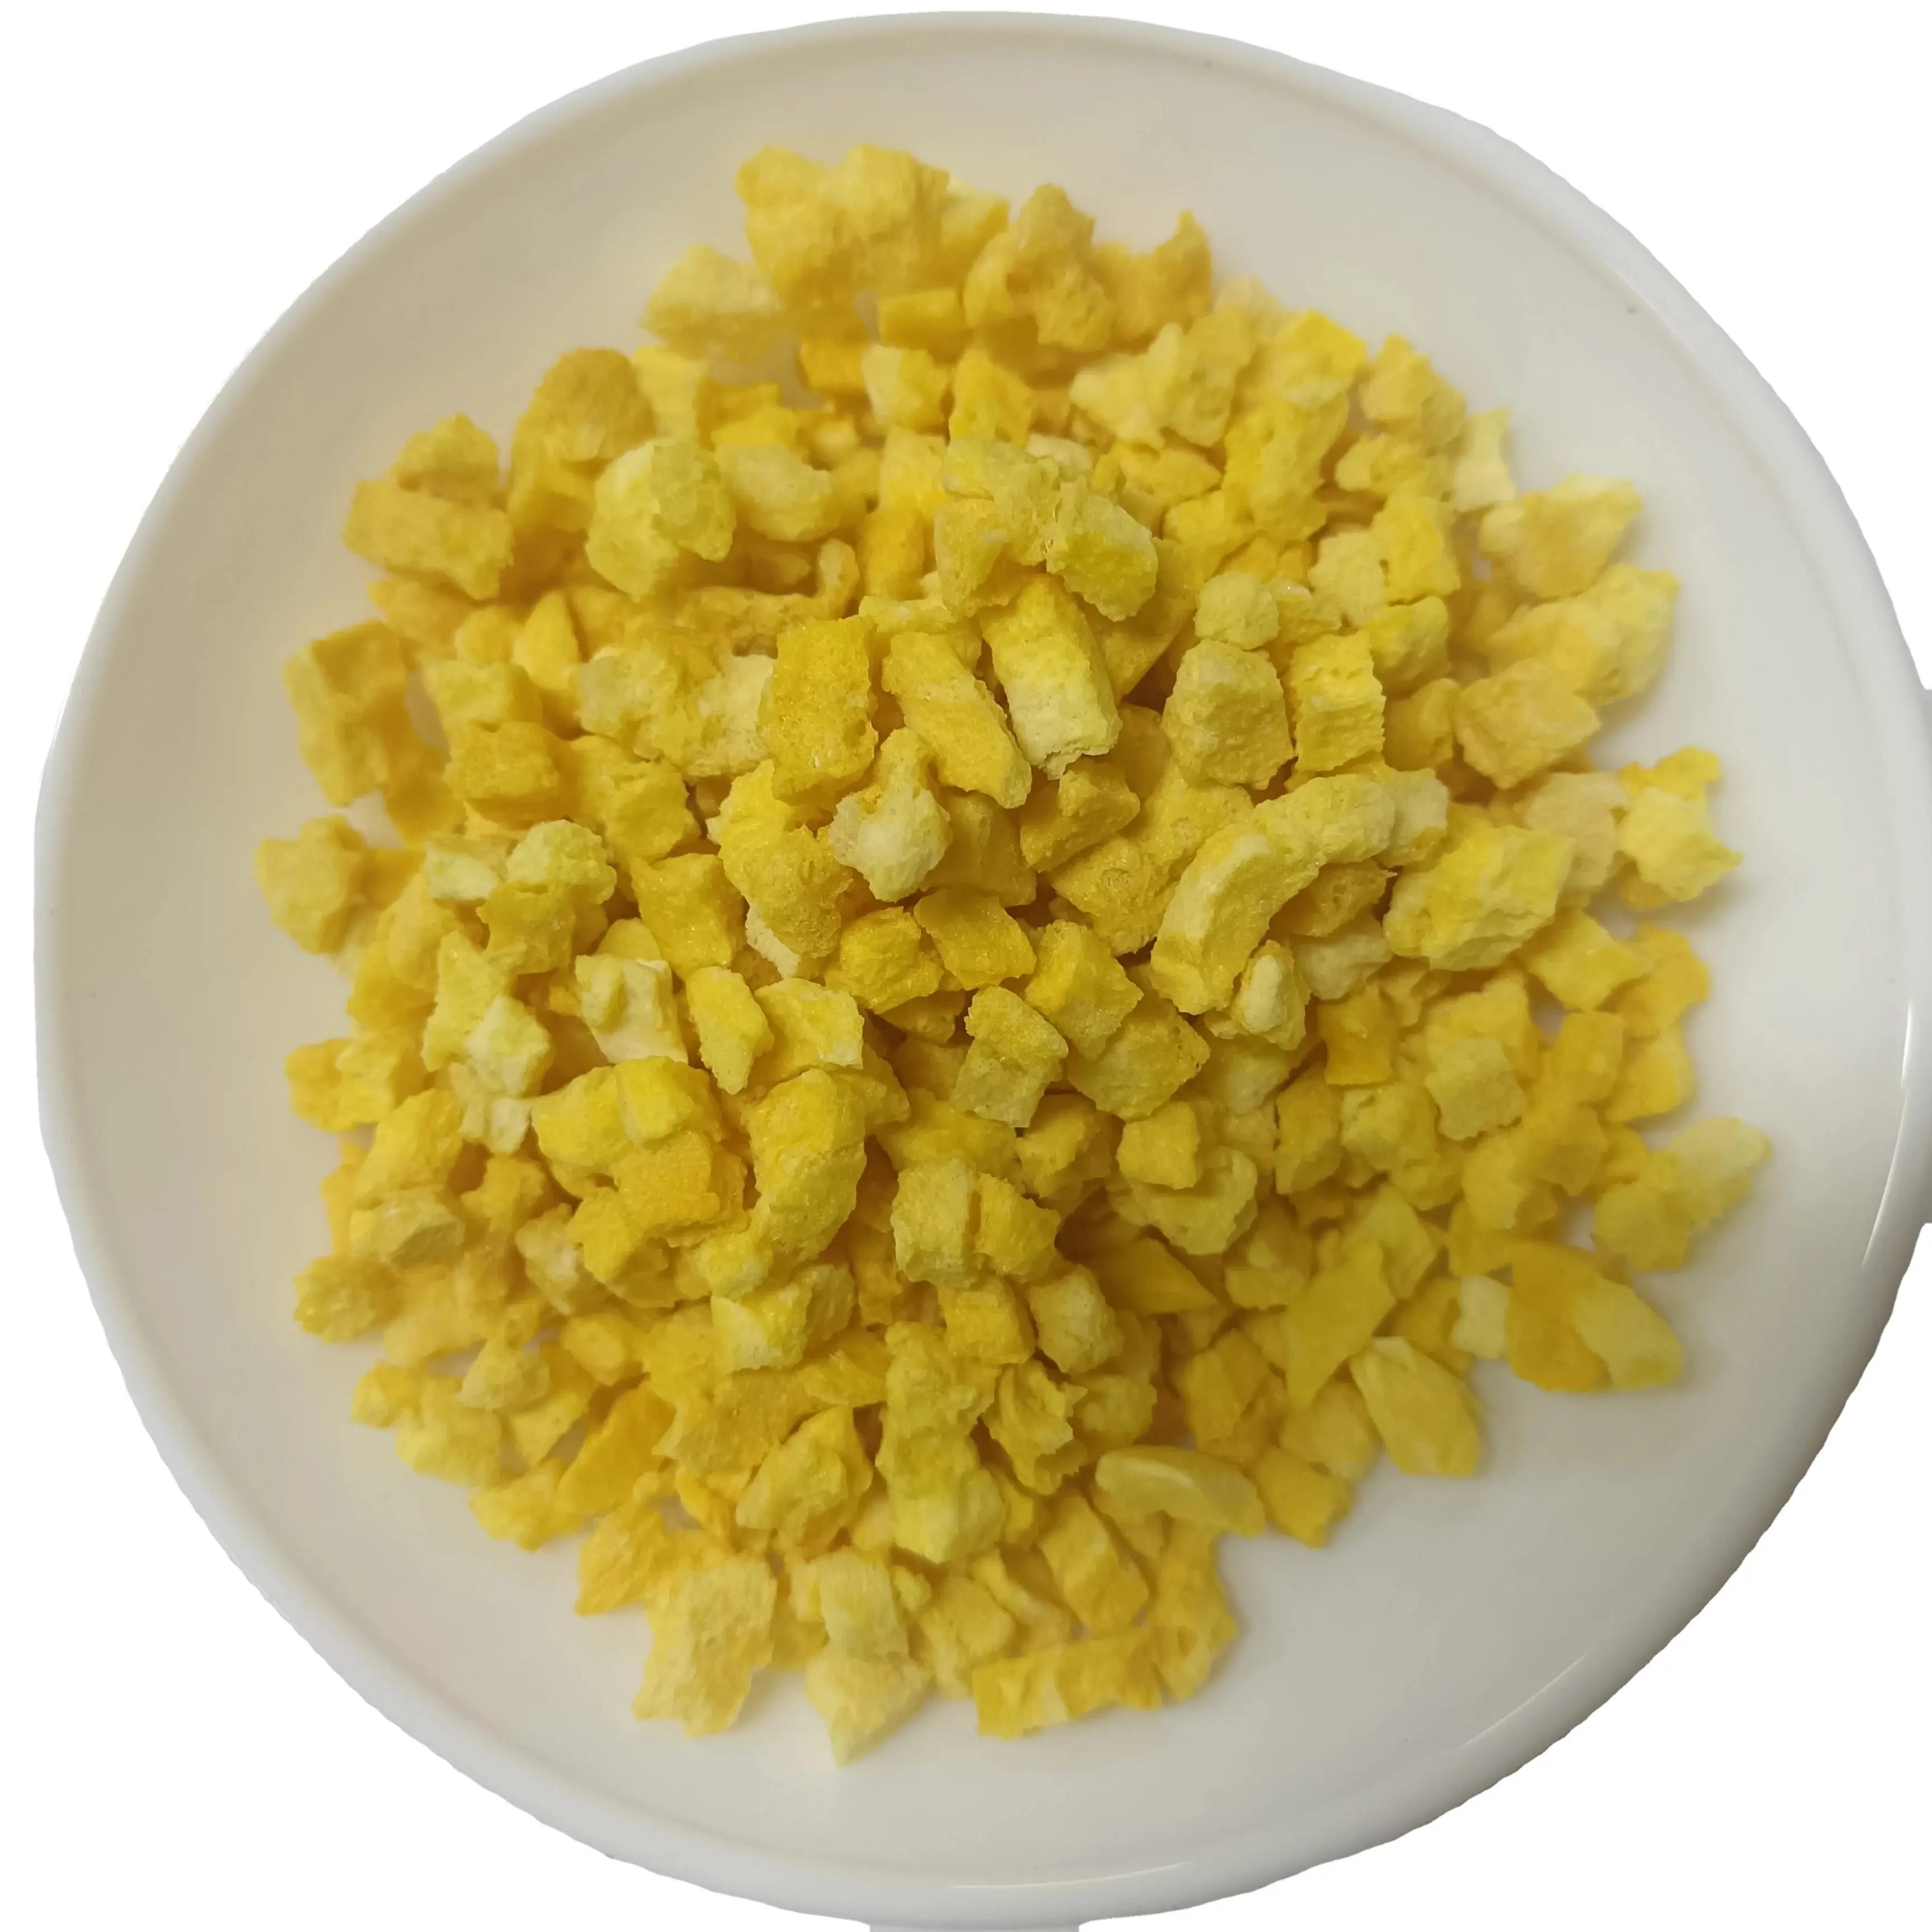 massenhaft gefriergetrocknete mango würfel ideal für obst tee backen oder direkt essen gesunde snacks großhandel gefriergetrocknete früchte